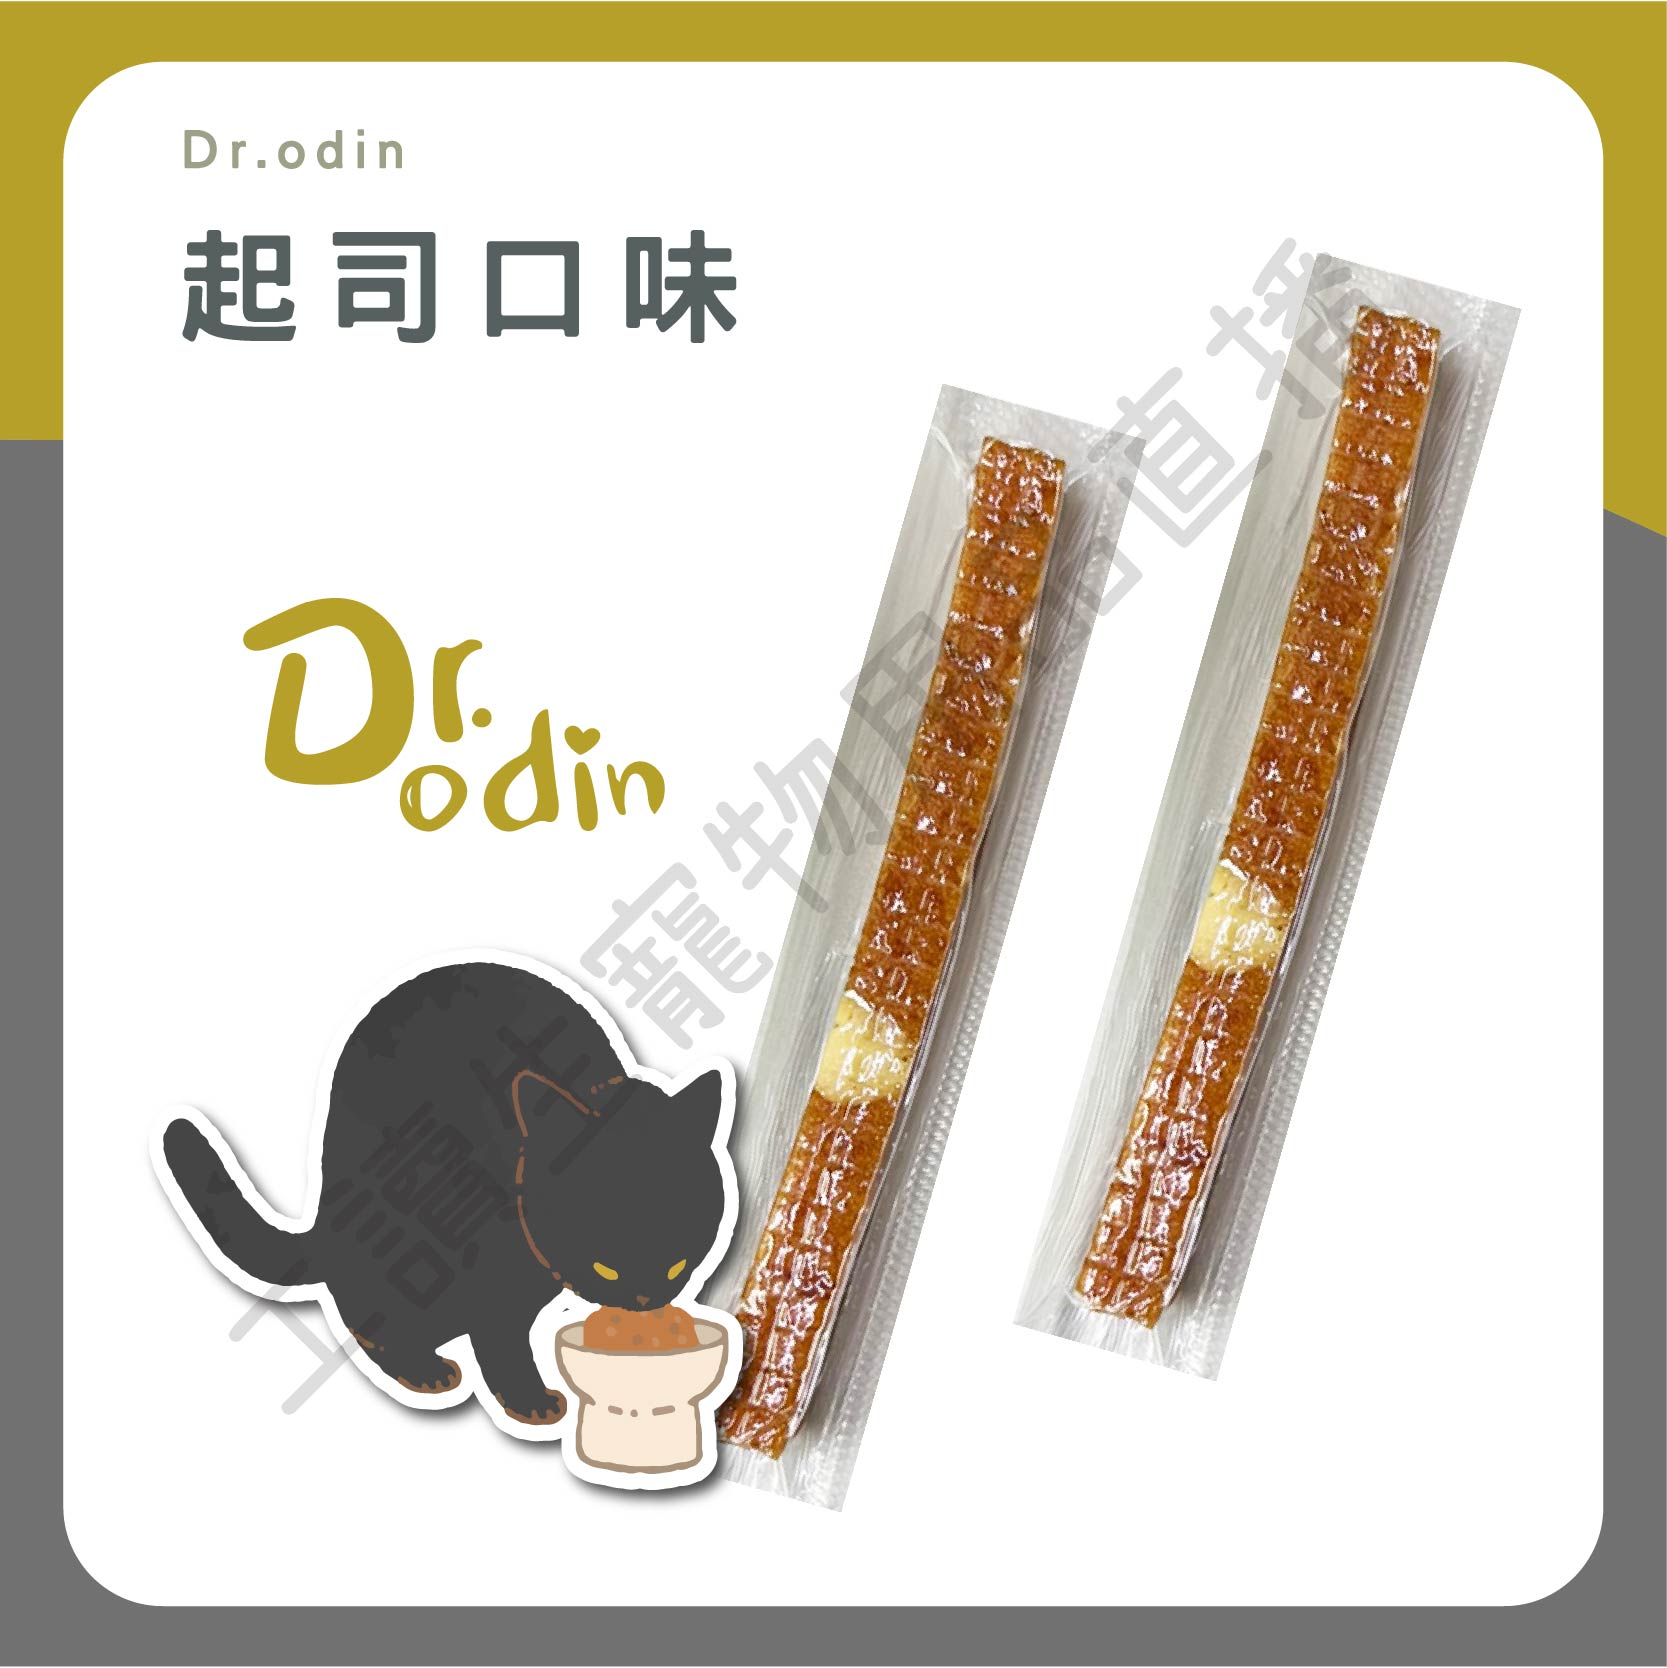 遇見毛寵 Dr.odin 軟嫩筷子多汁 原味 起司 雞肉條 10g 台灣製造 真空包裝 純肉零食 全齡貓狗